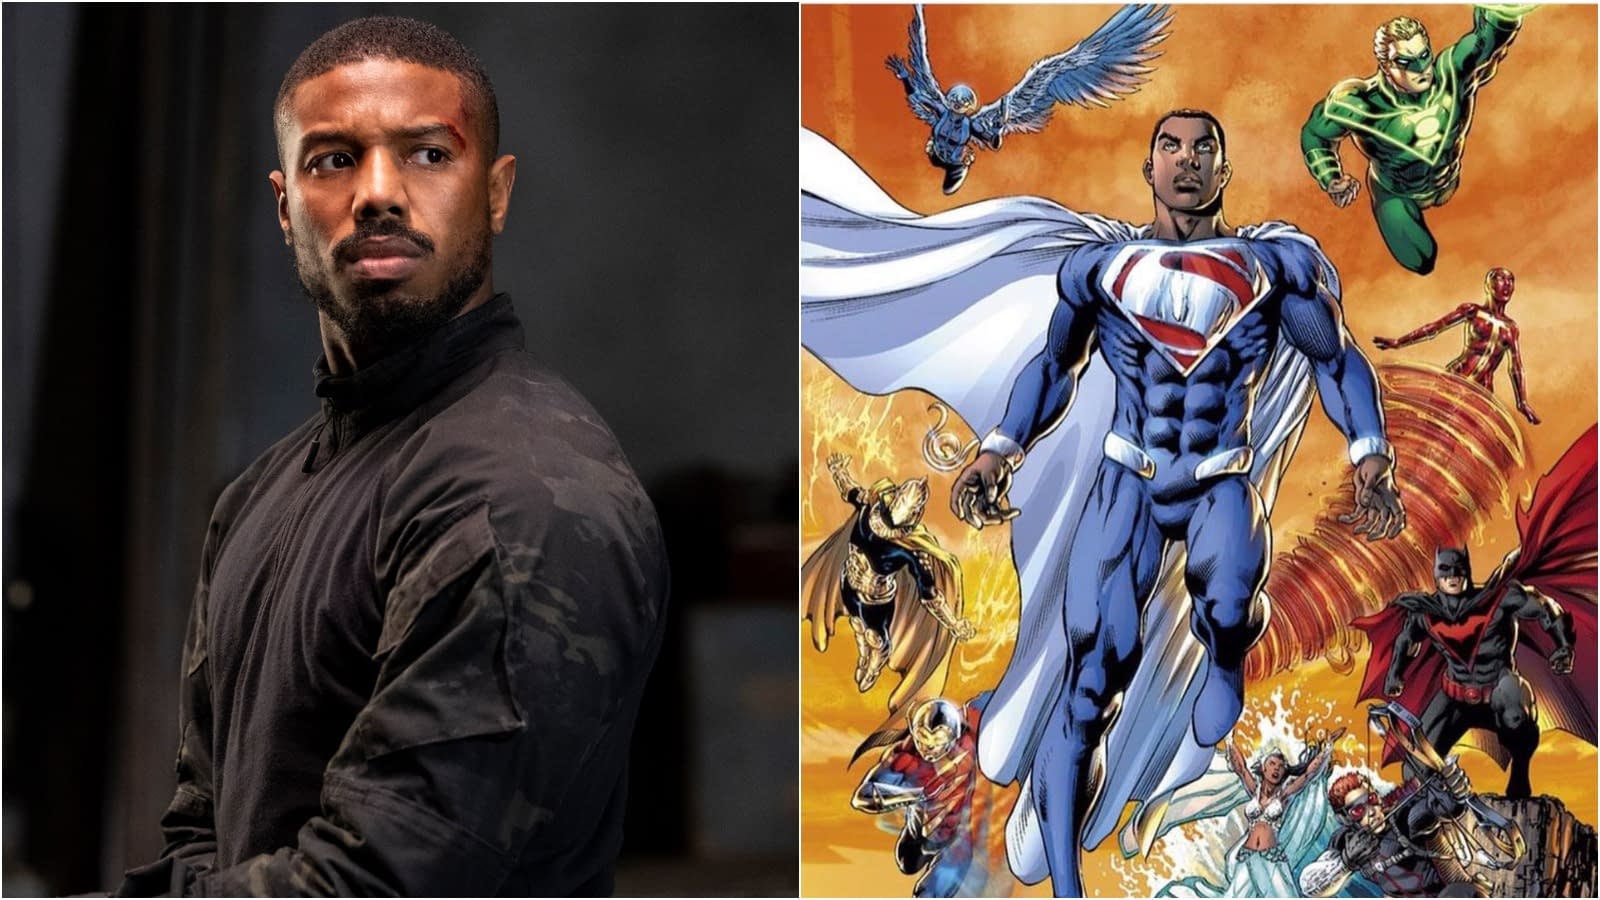 Michael B. Jordan Developing Black Superman Series for HBO Max?